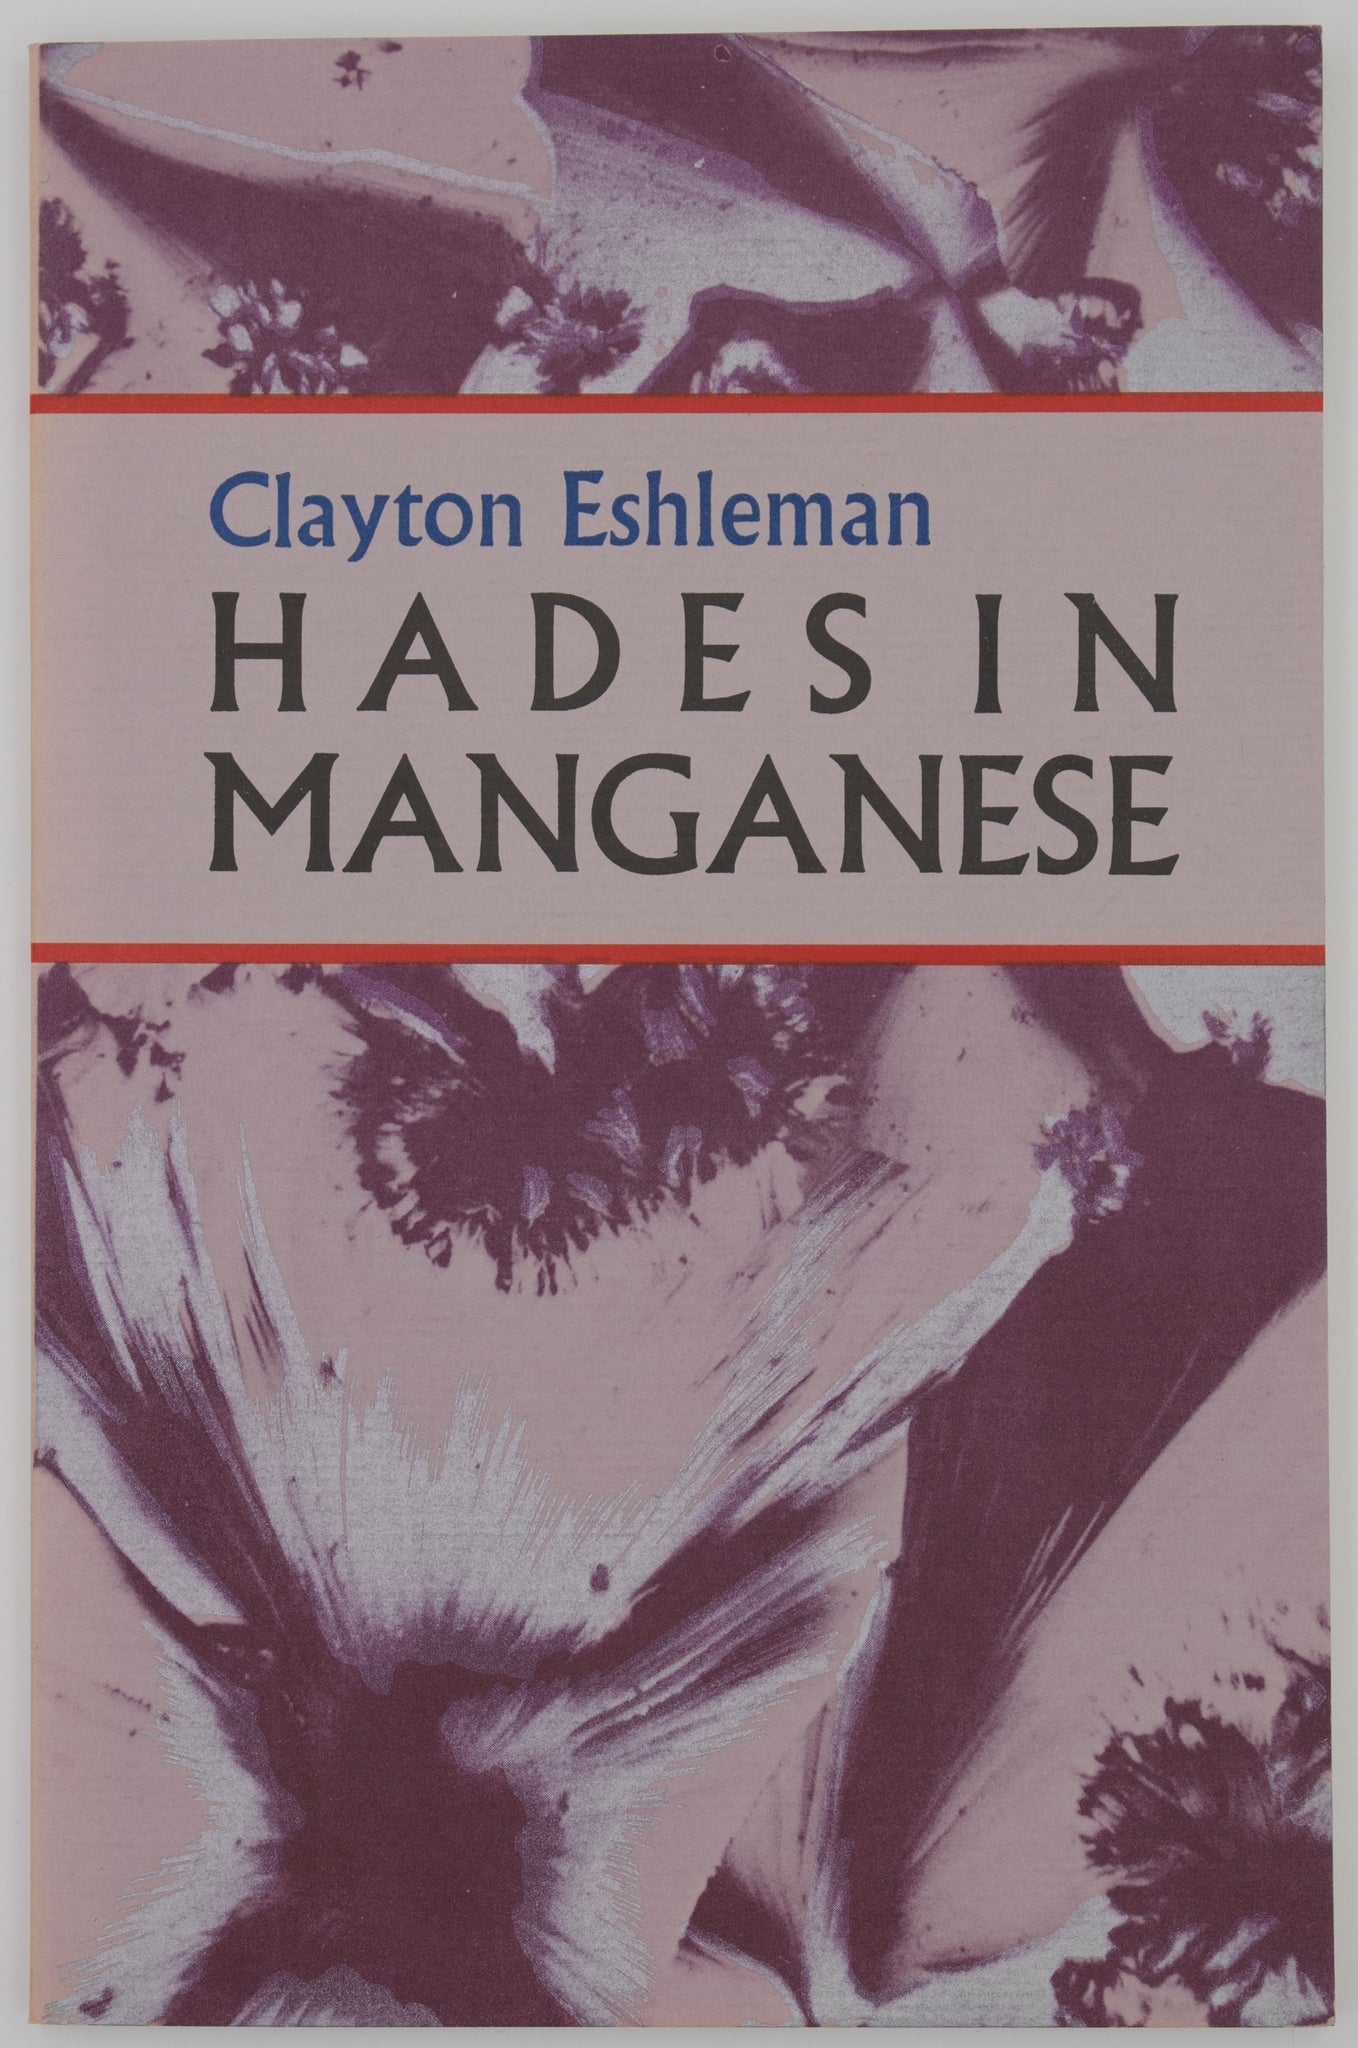 Hades in Manganese